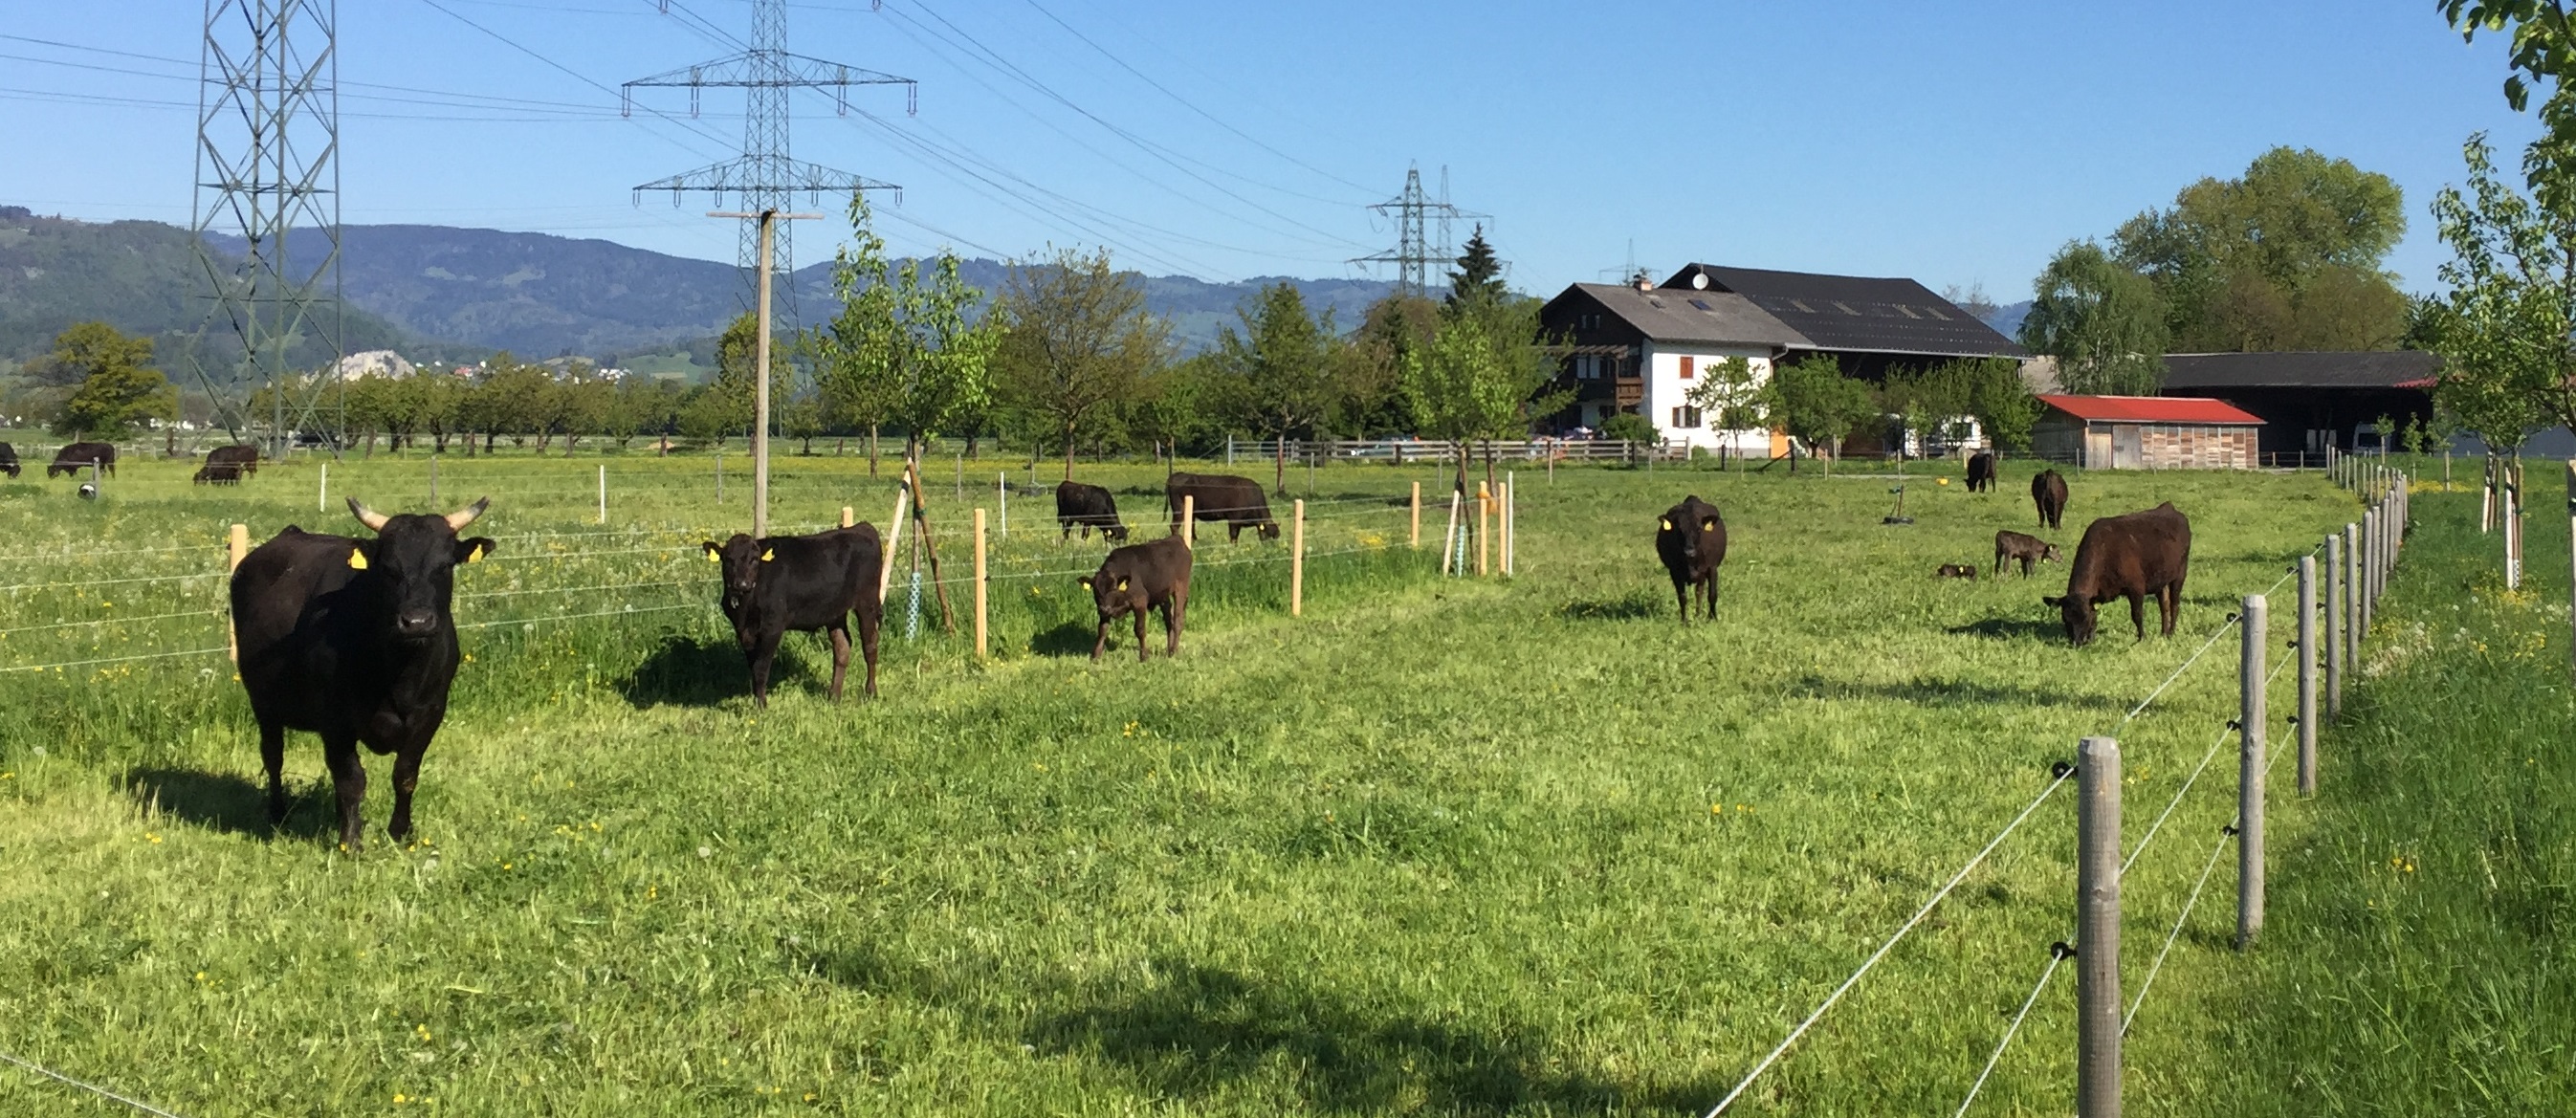 2016 Stier Herde Hof Ausschnitt